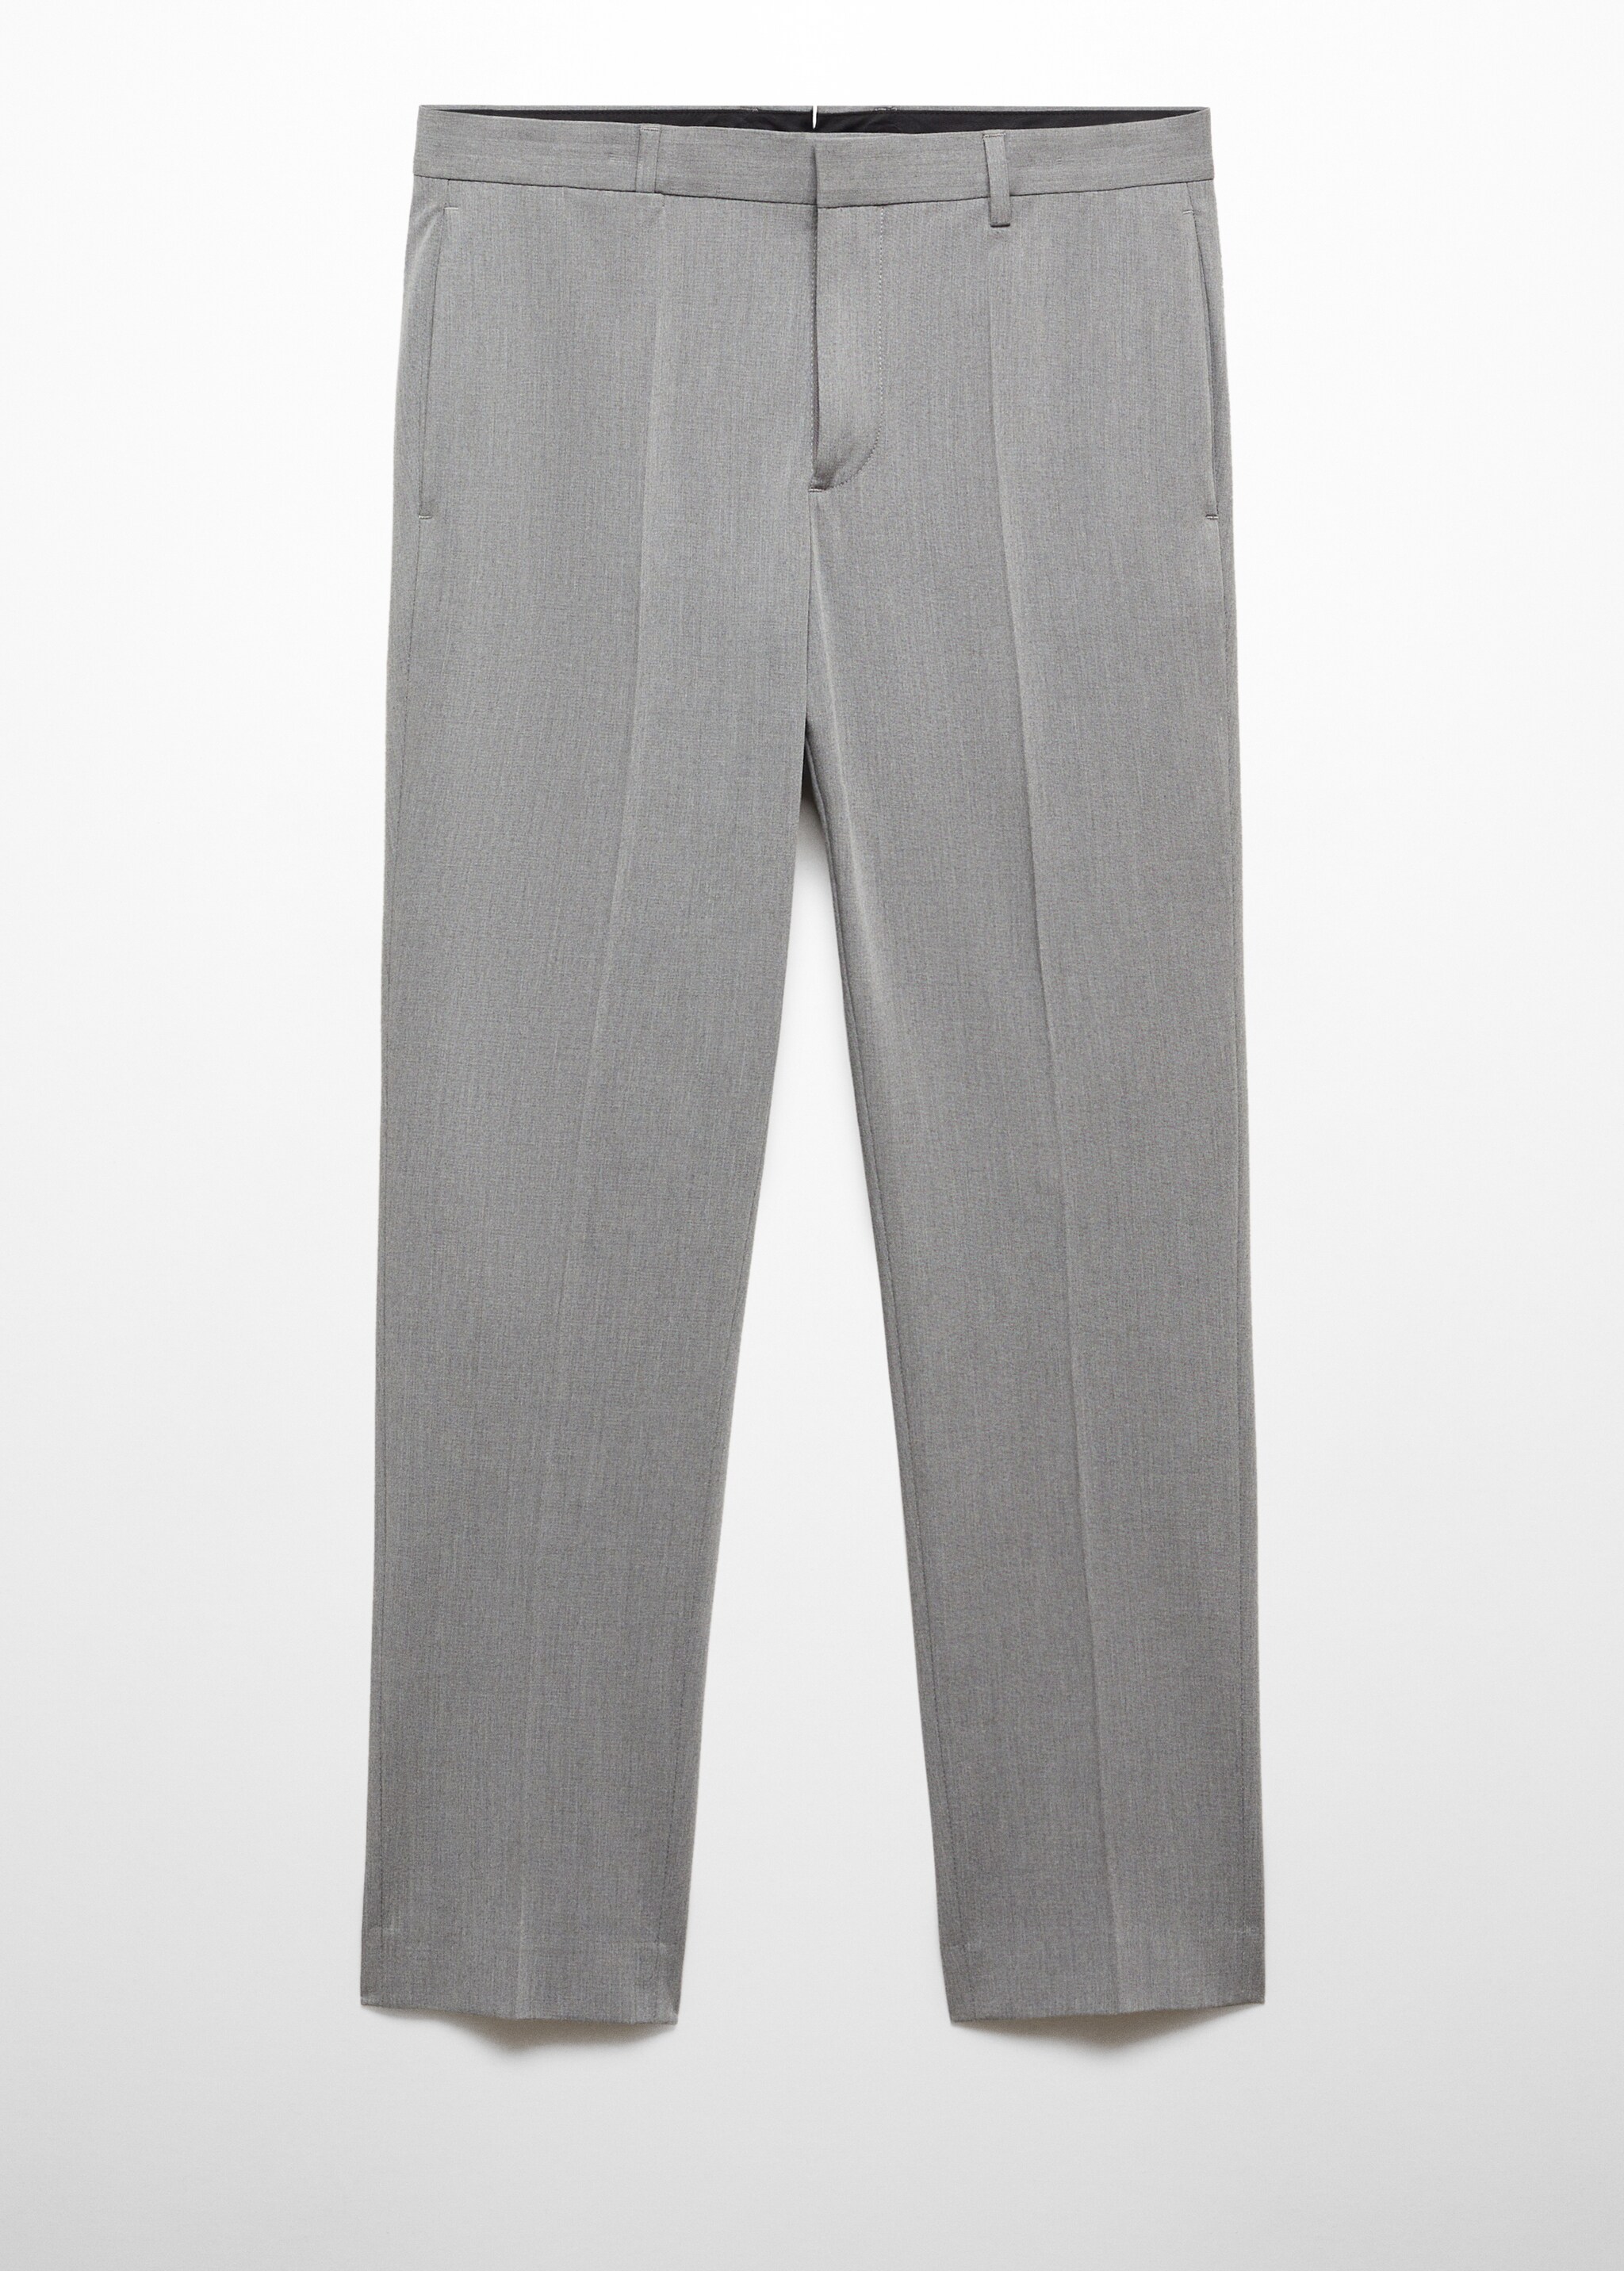 Pantalón traje super slim fit tejido strech - Artículo sin modelo